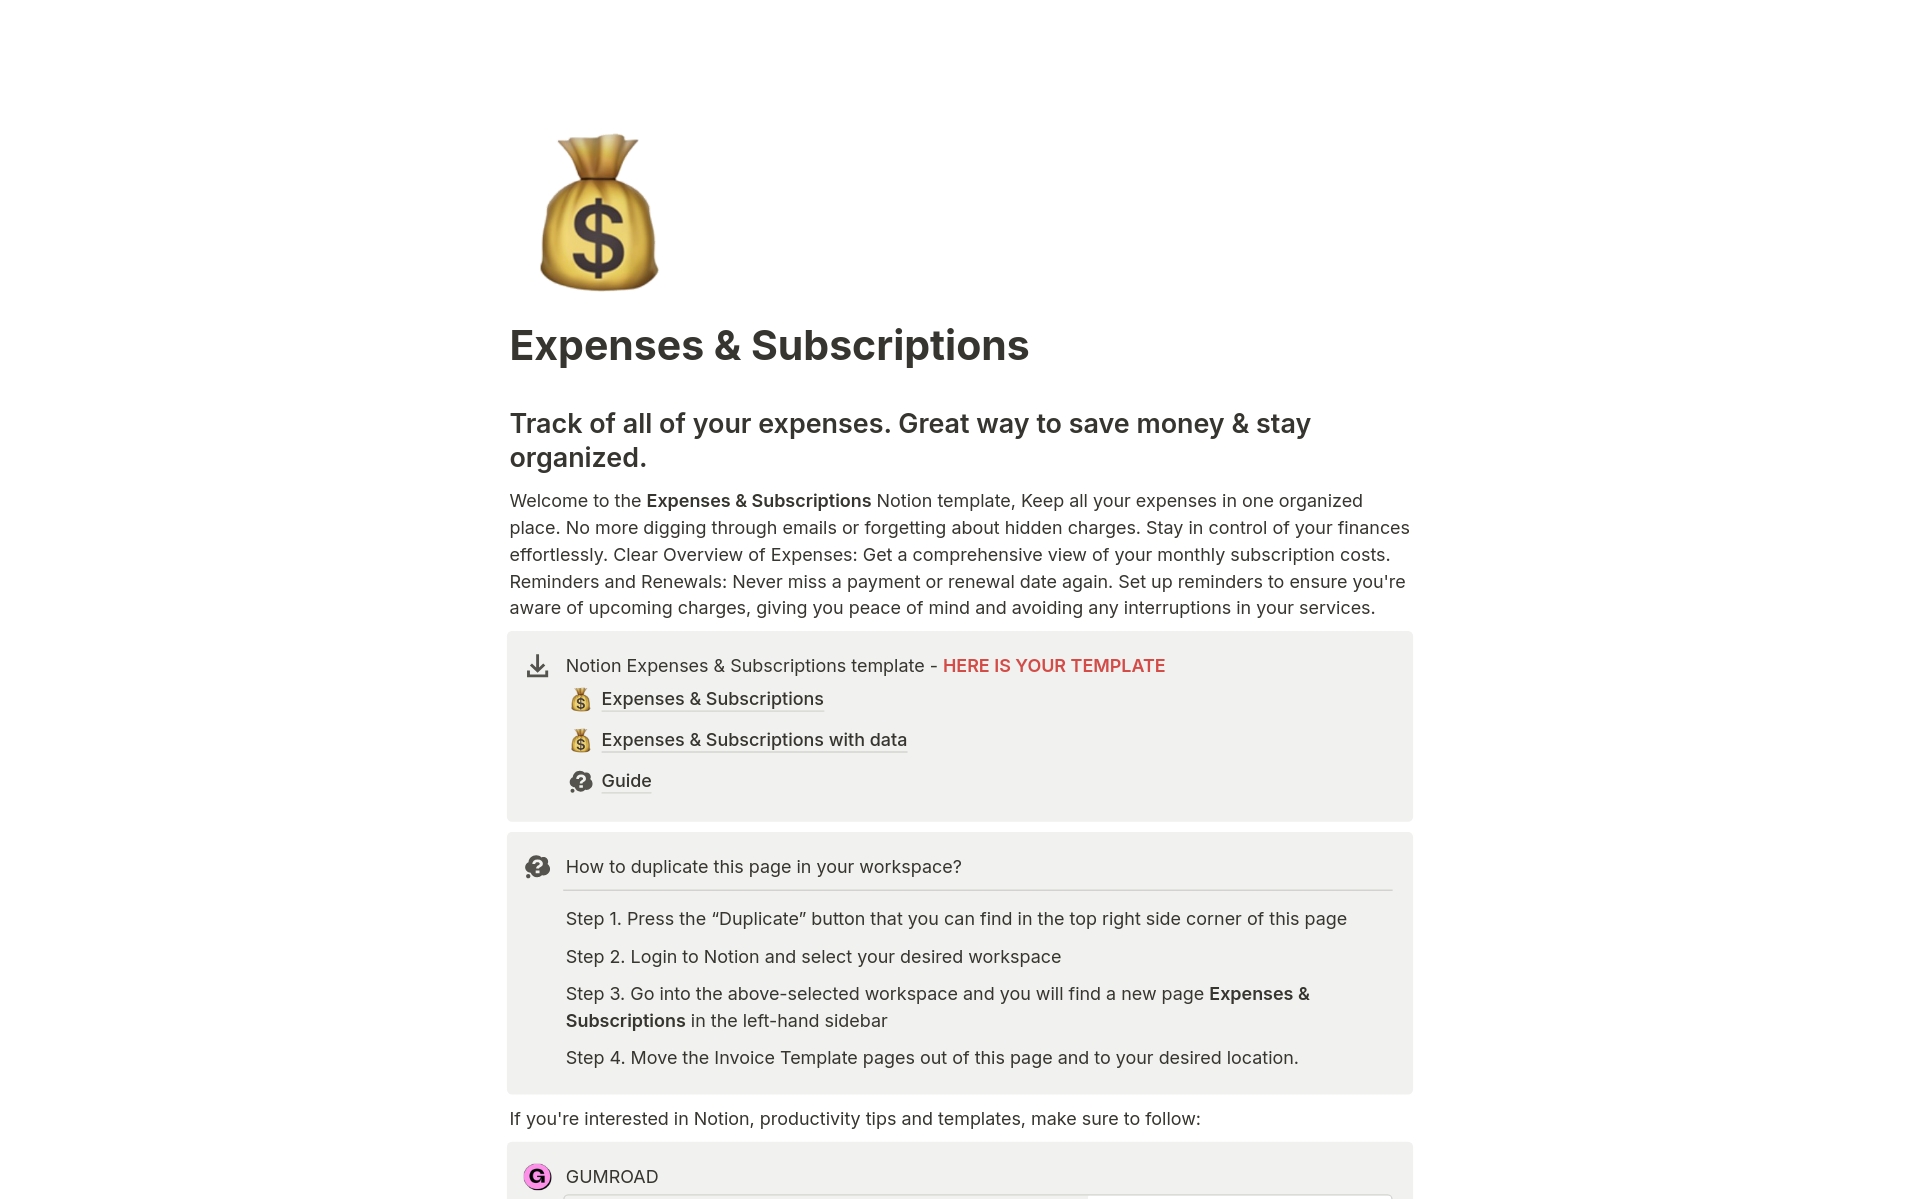 Vista previa de una plantilla para Expenses & Subscriptions